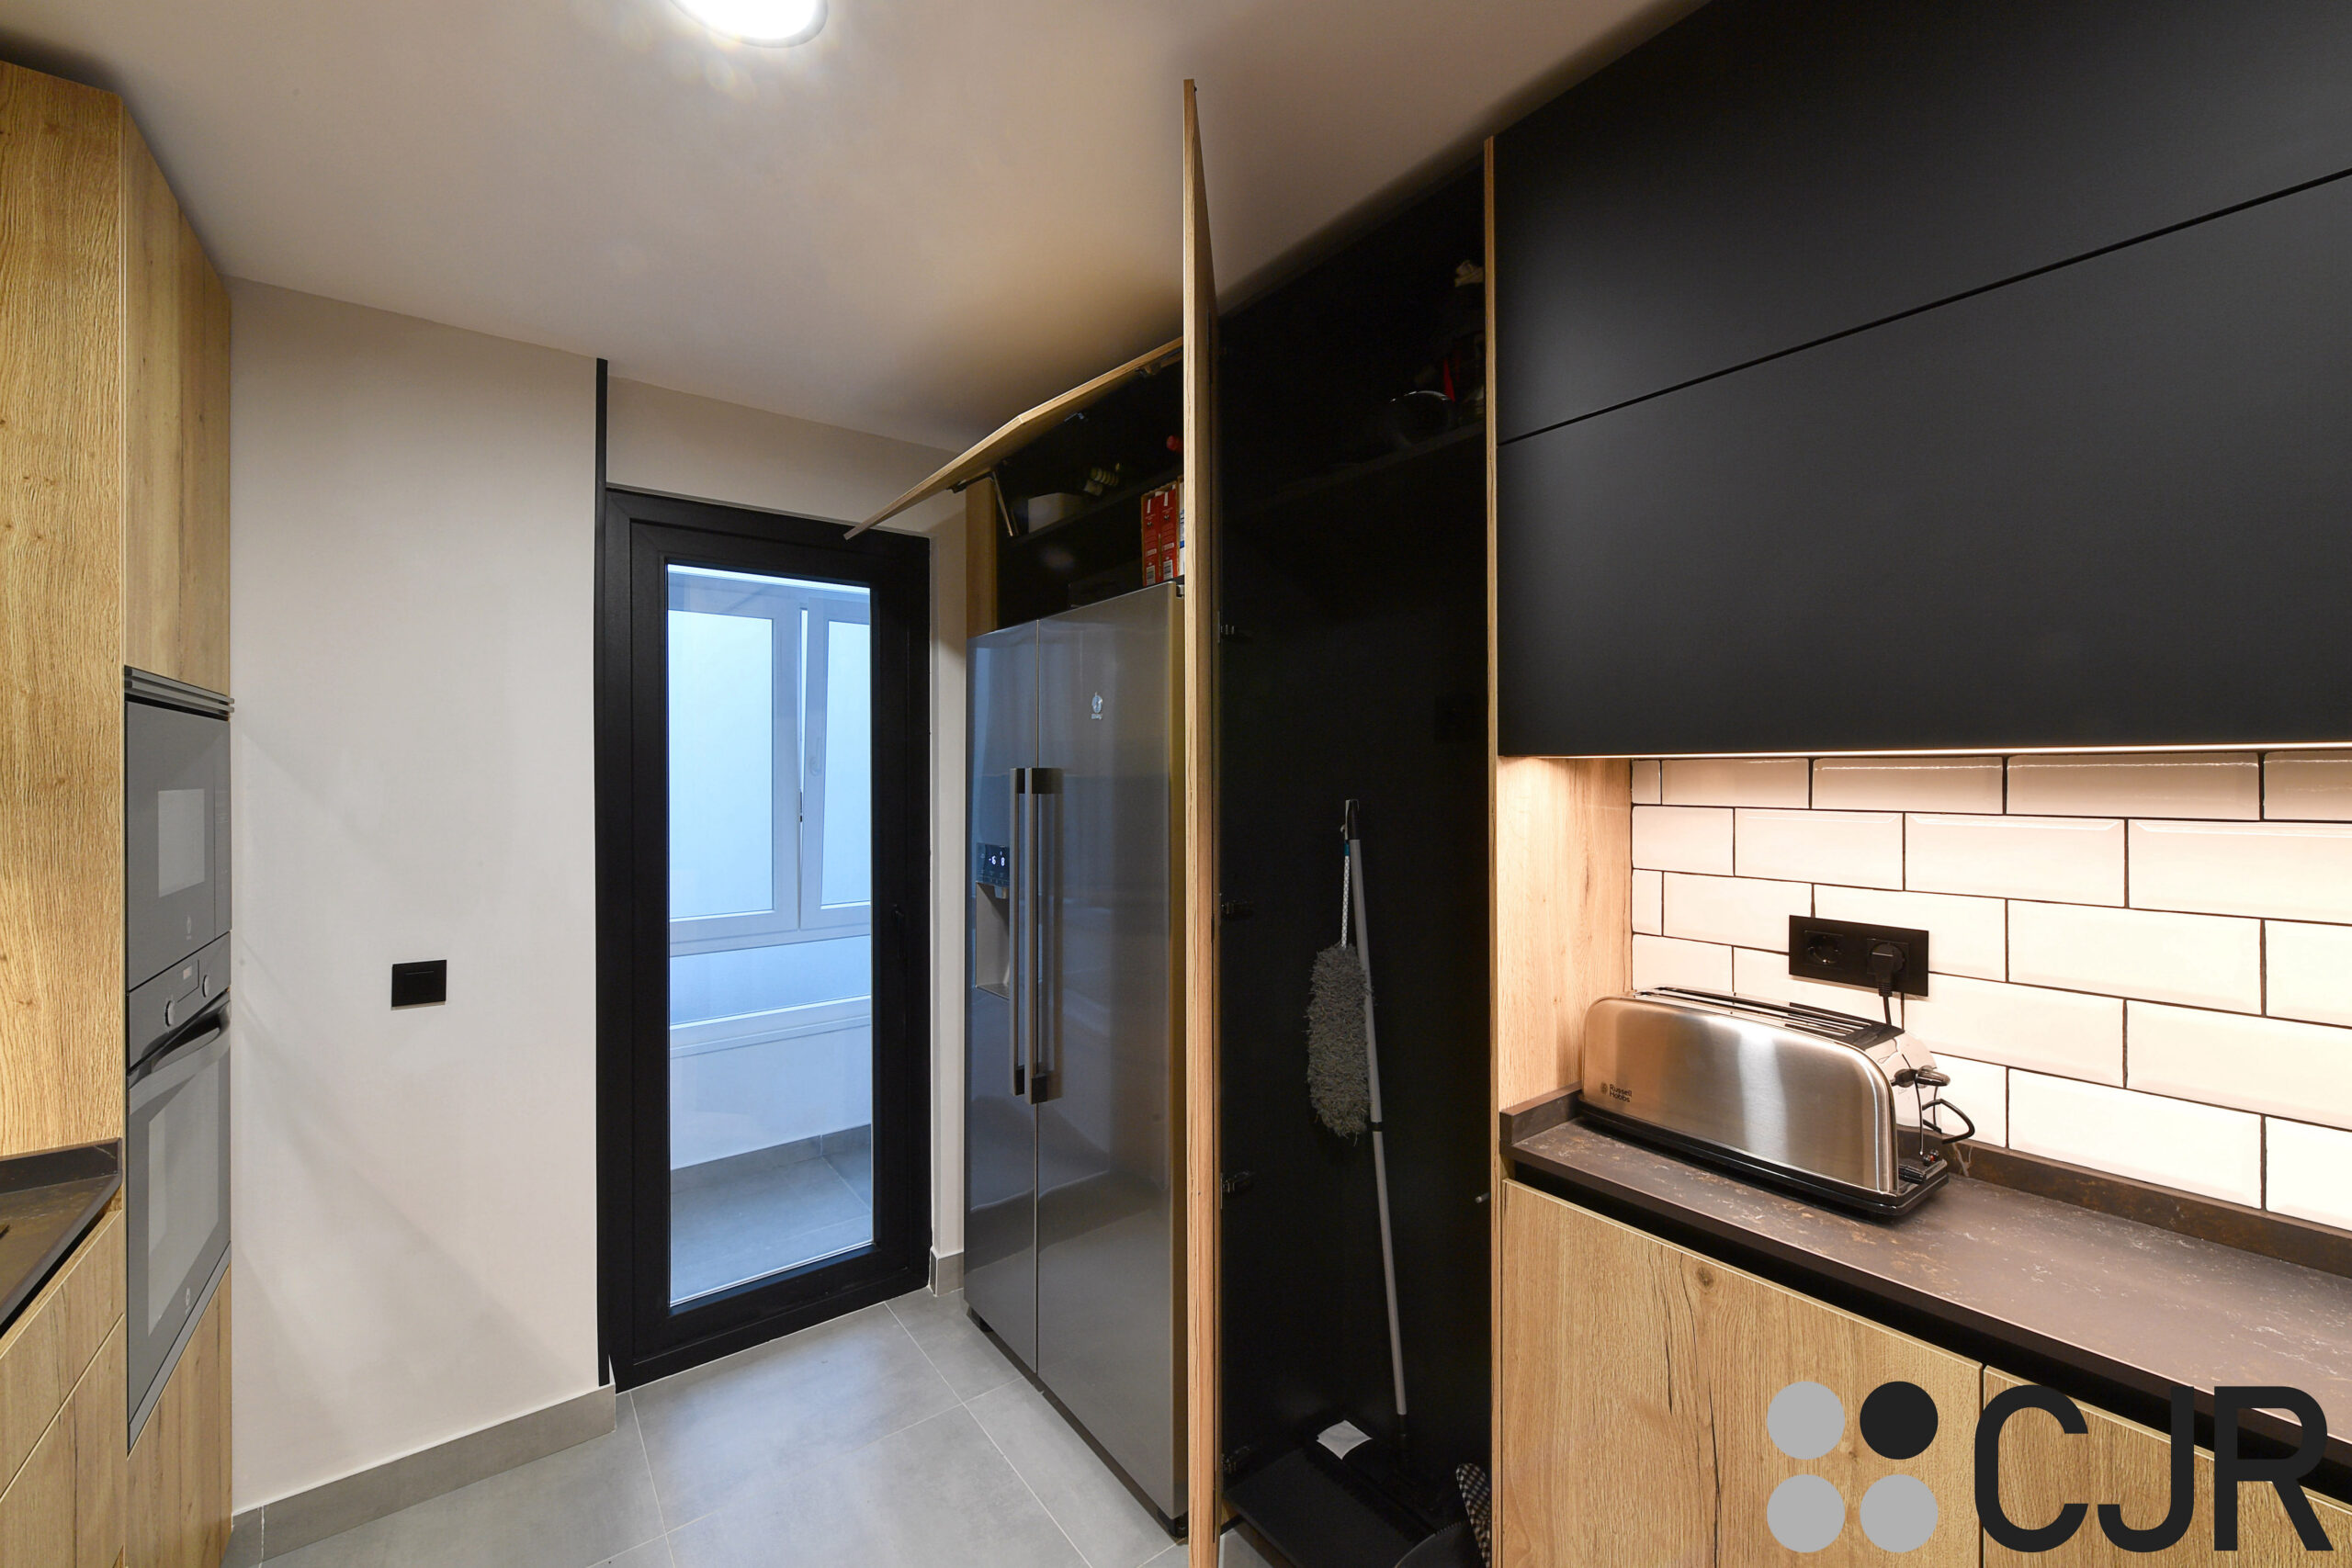 torres de cocina en madera con el interior en color negro cjr